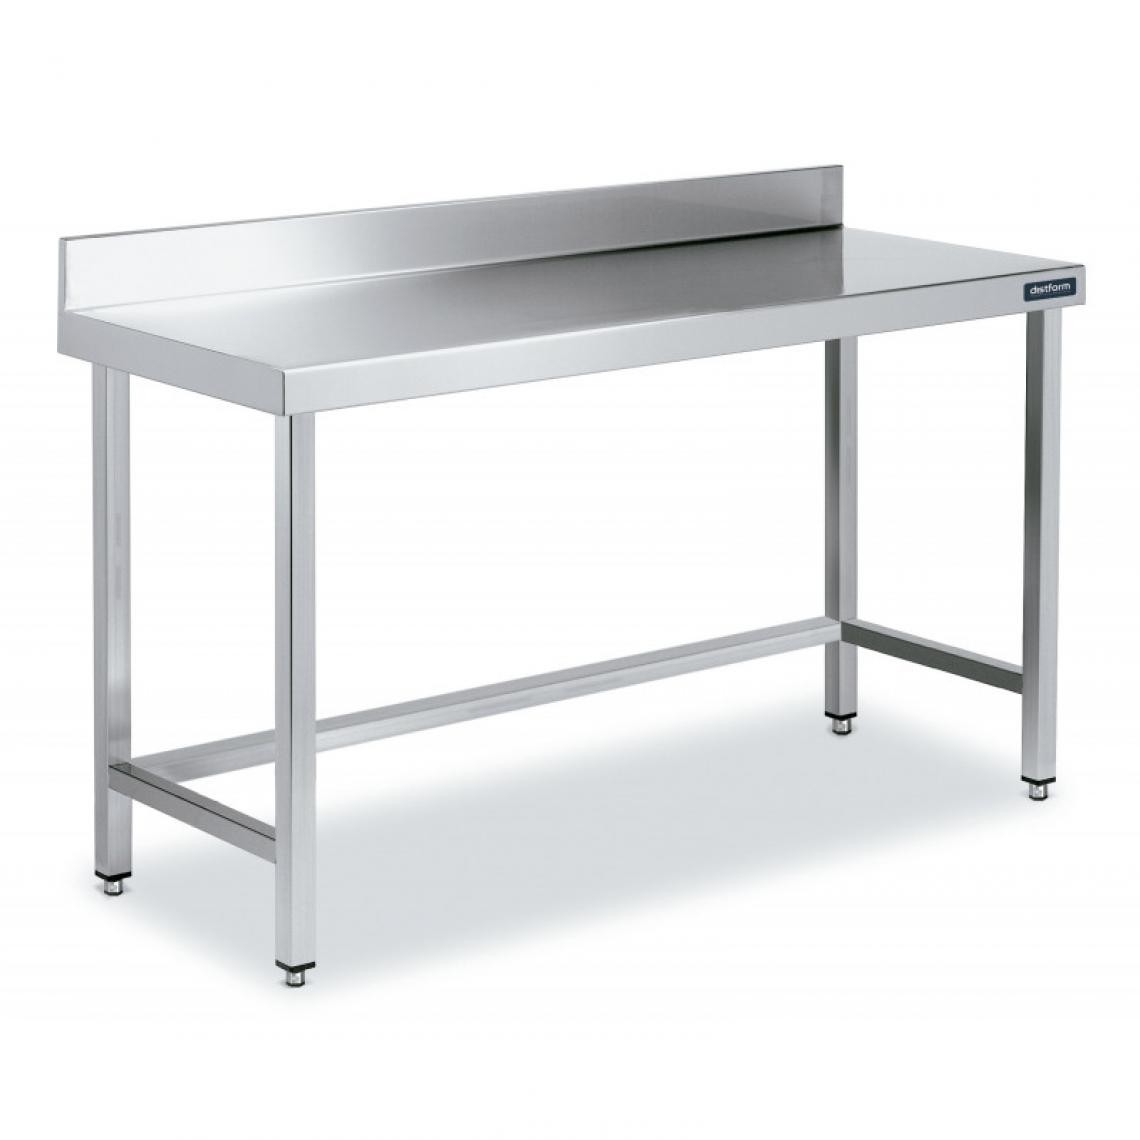 DISTFORM - Table Adossée en Inox avec Renforts Profondeur 550 mm - Distform - Acier inoxydable2200x550 - Tables à manger